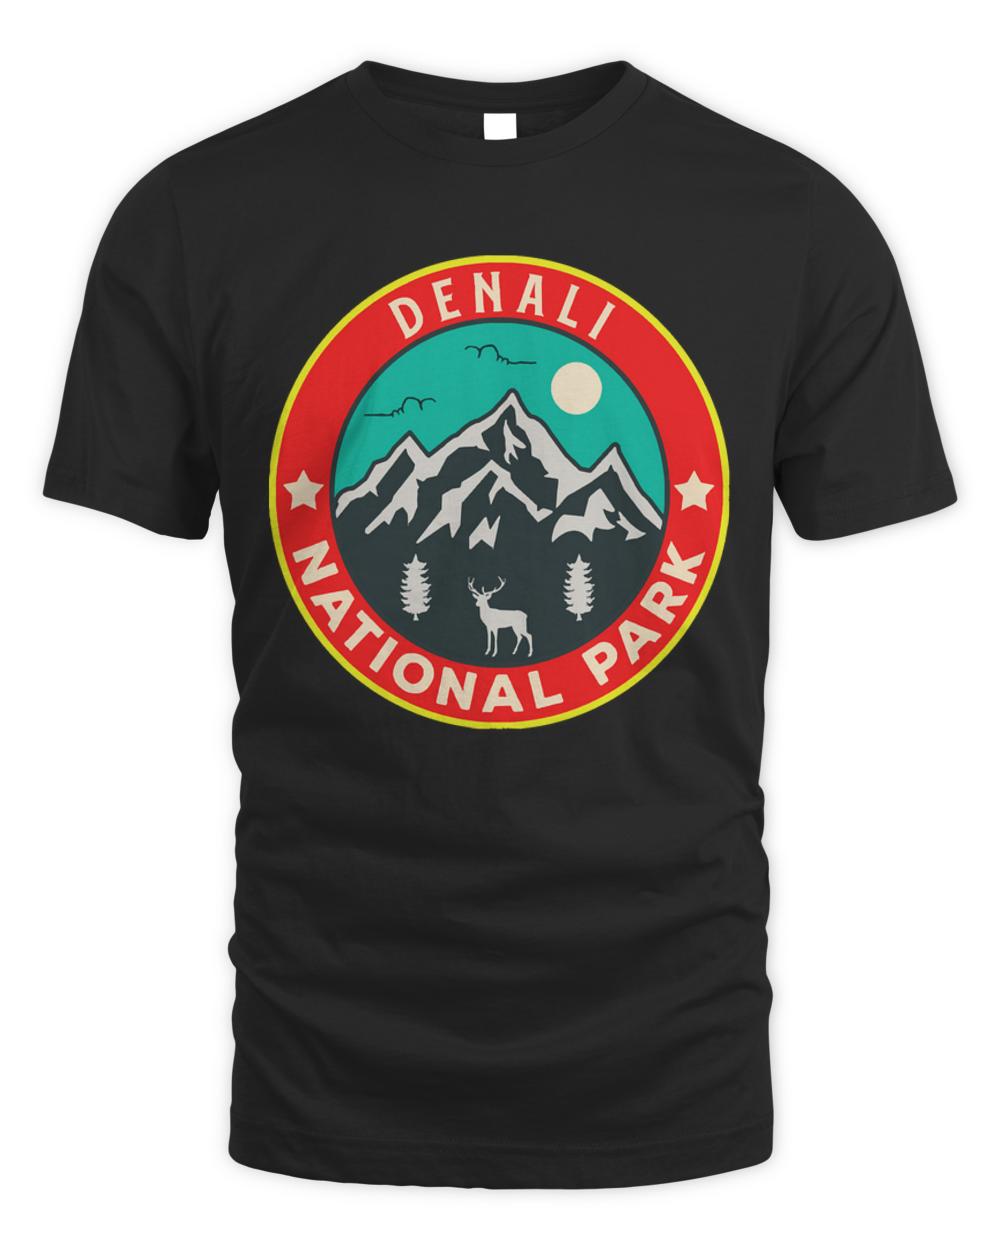 Denali National Park T- Shirtdenali national park 438